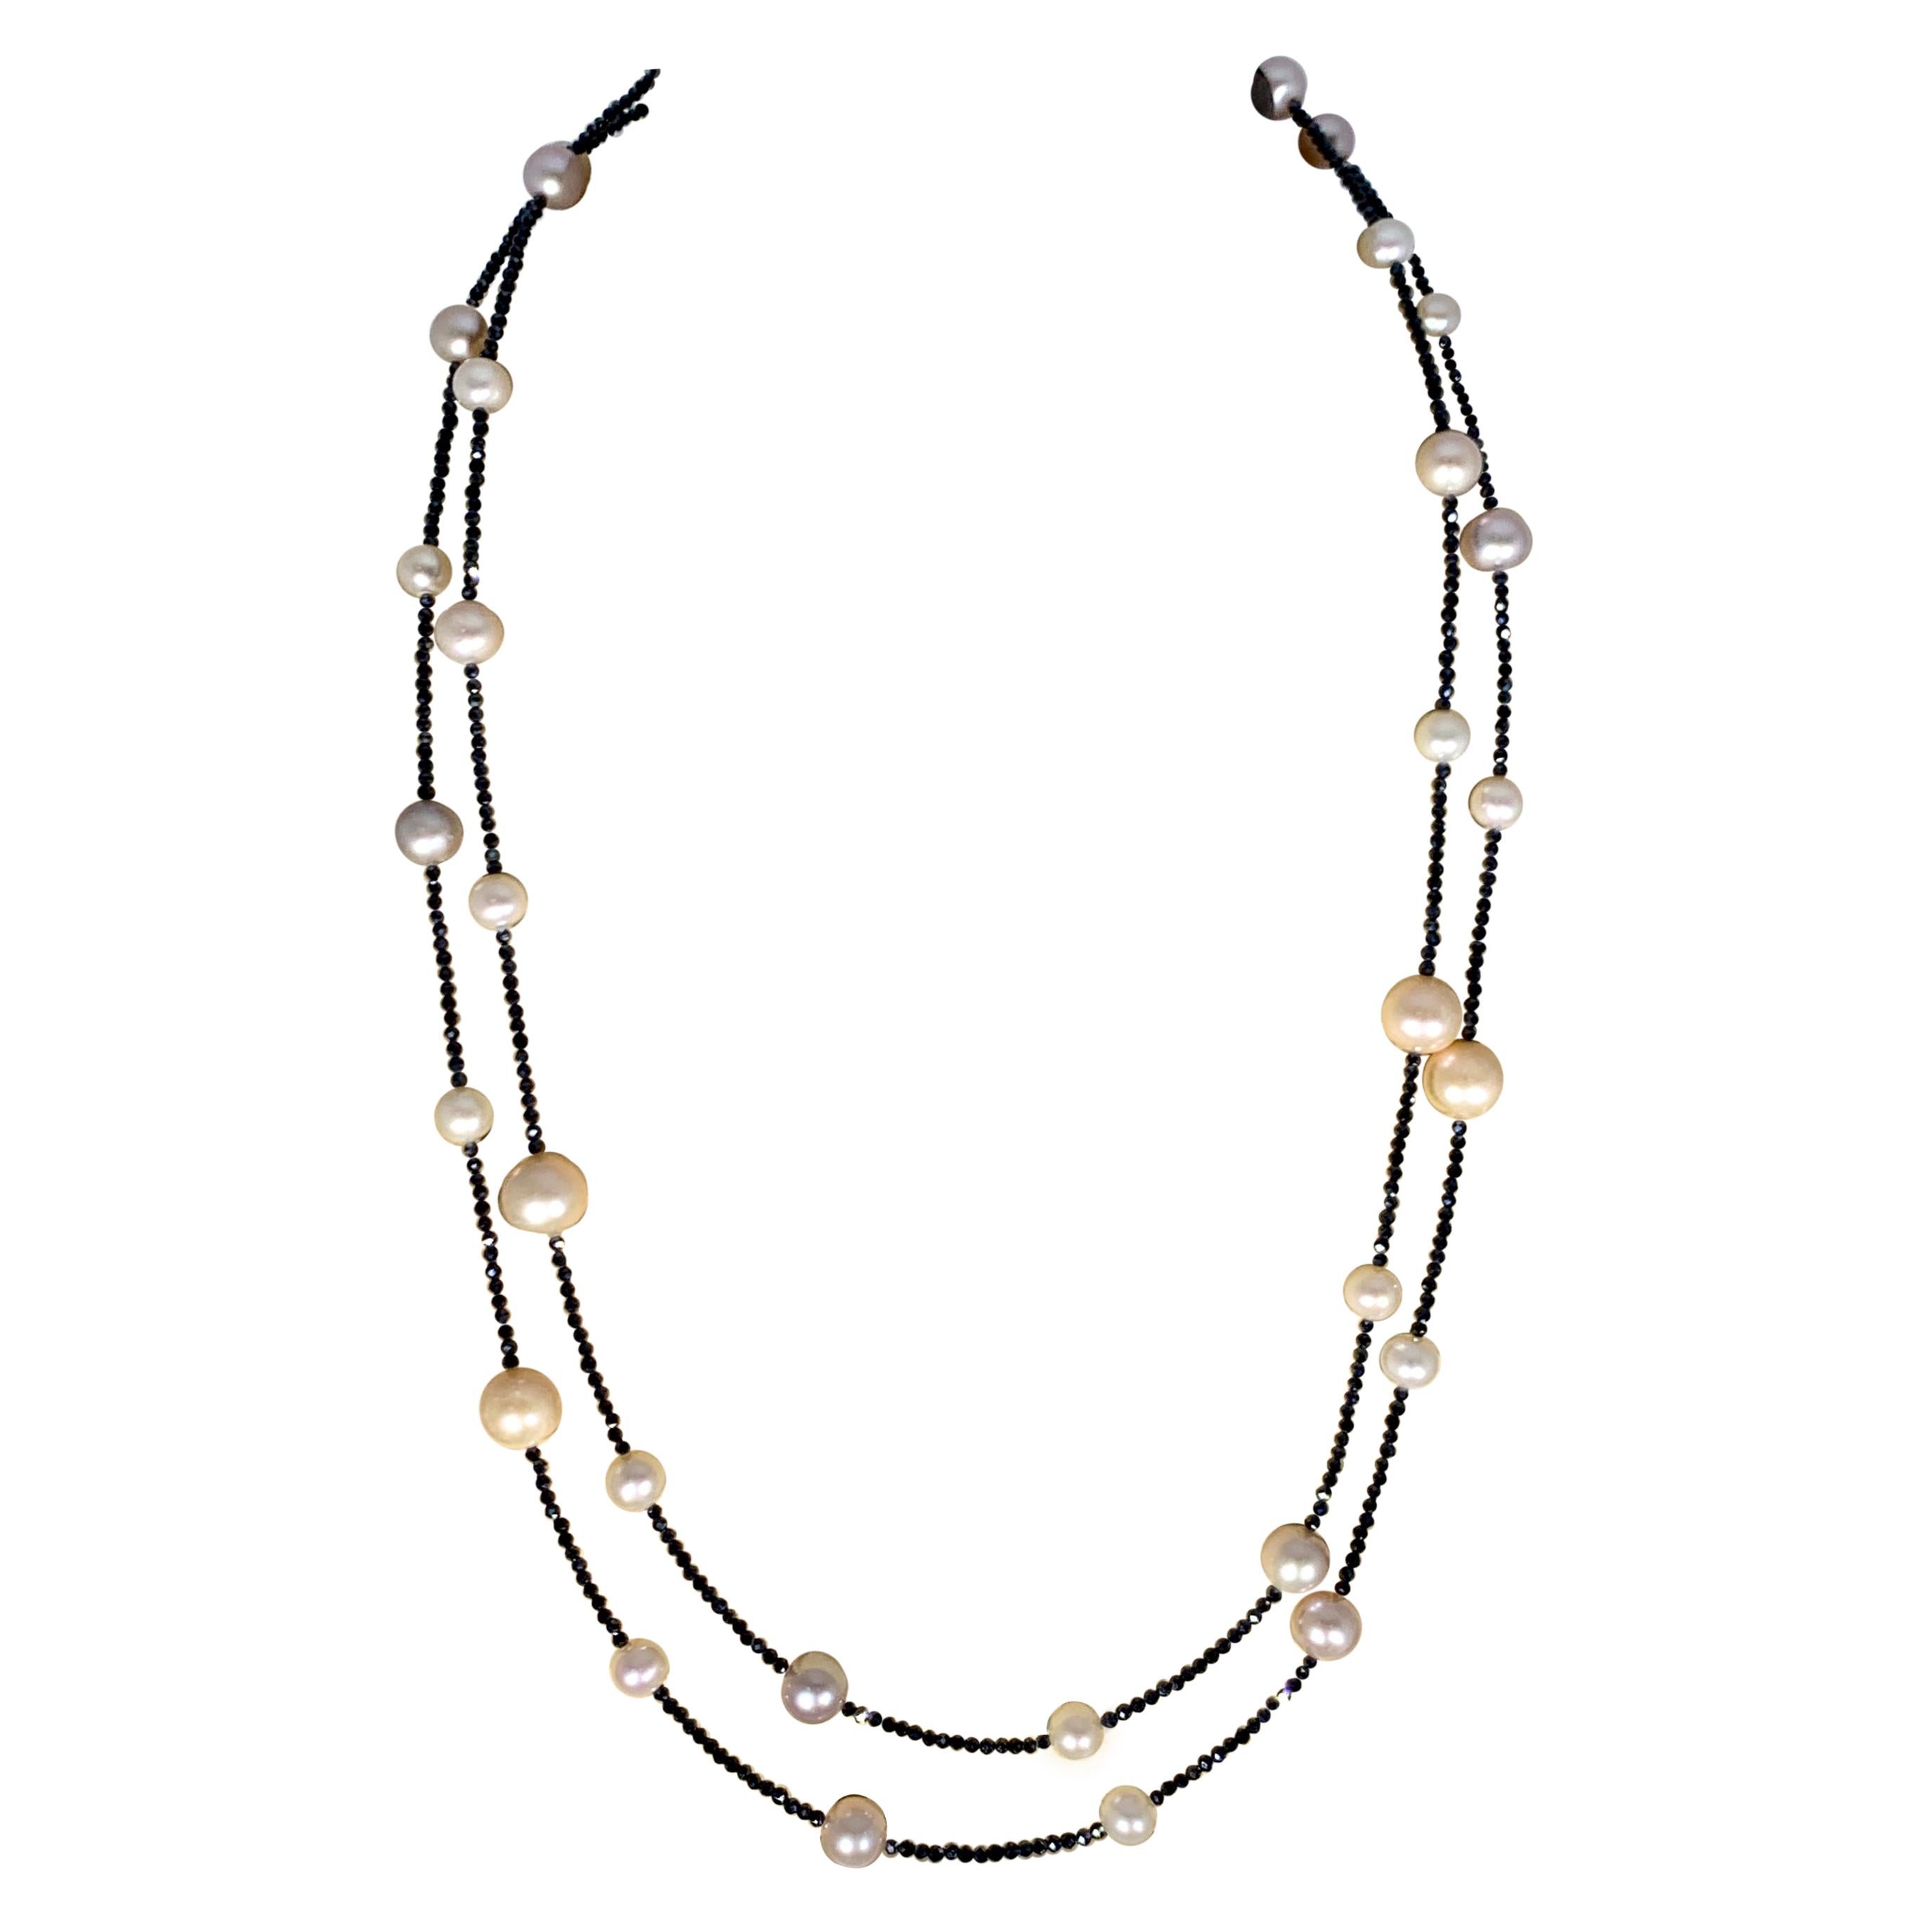 Collier à un rang unique de perles d'eau douce avec spinelle noire, longueur opéra de 116,84 cm